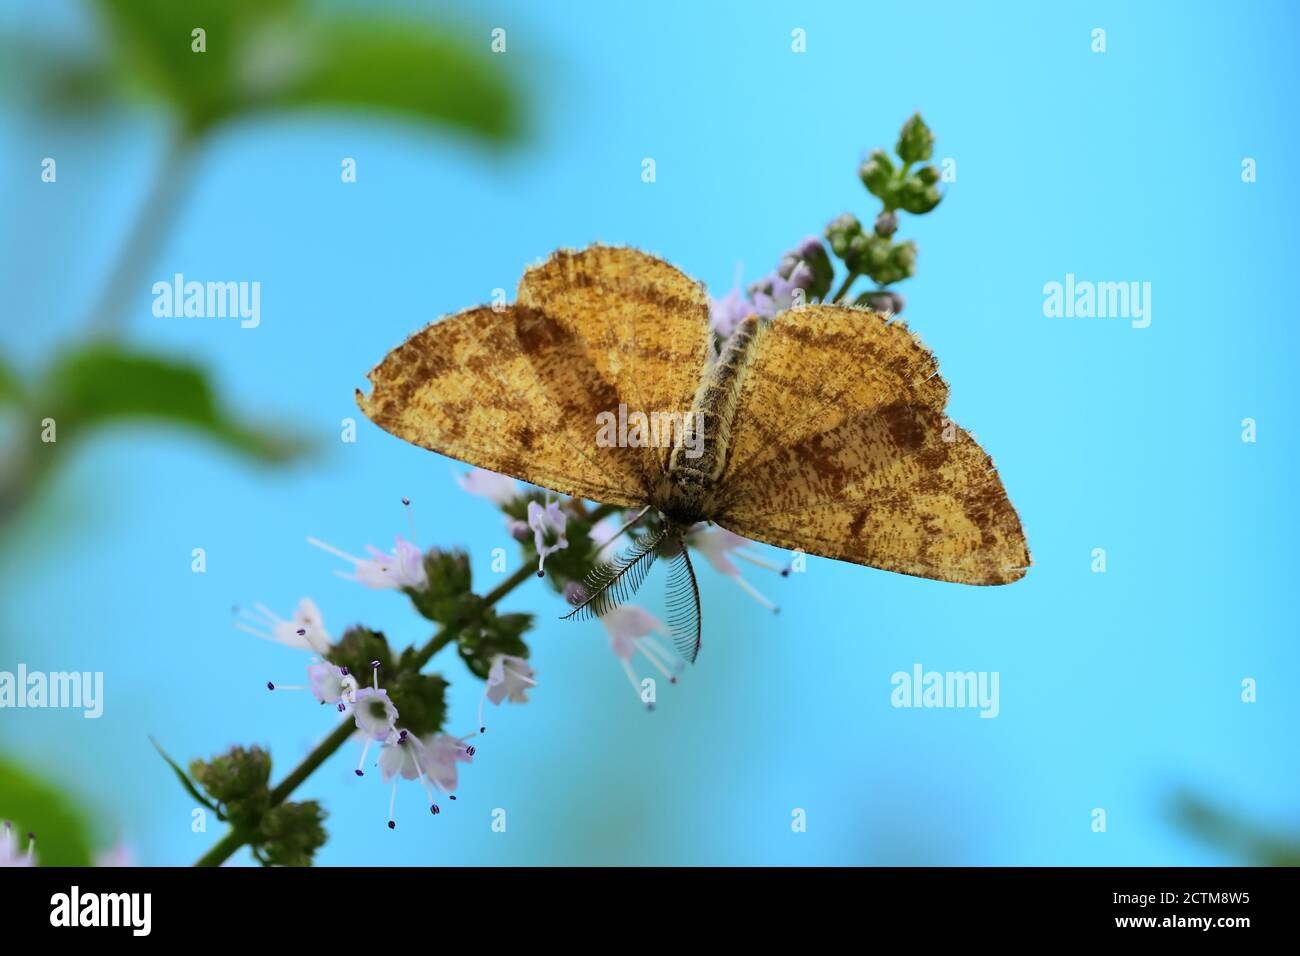 L'hématome commun (Hematutga atomaria) de la famille des Geometridae, photographié avec un objectif macro sur des fleurs de menthe sauvage. Banque D'Images